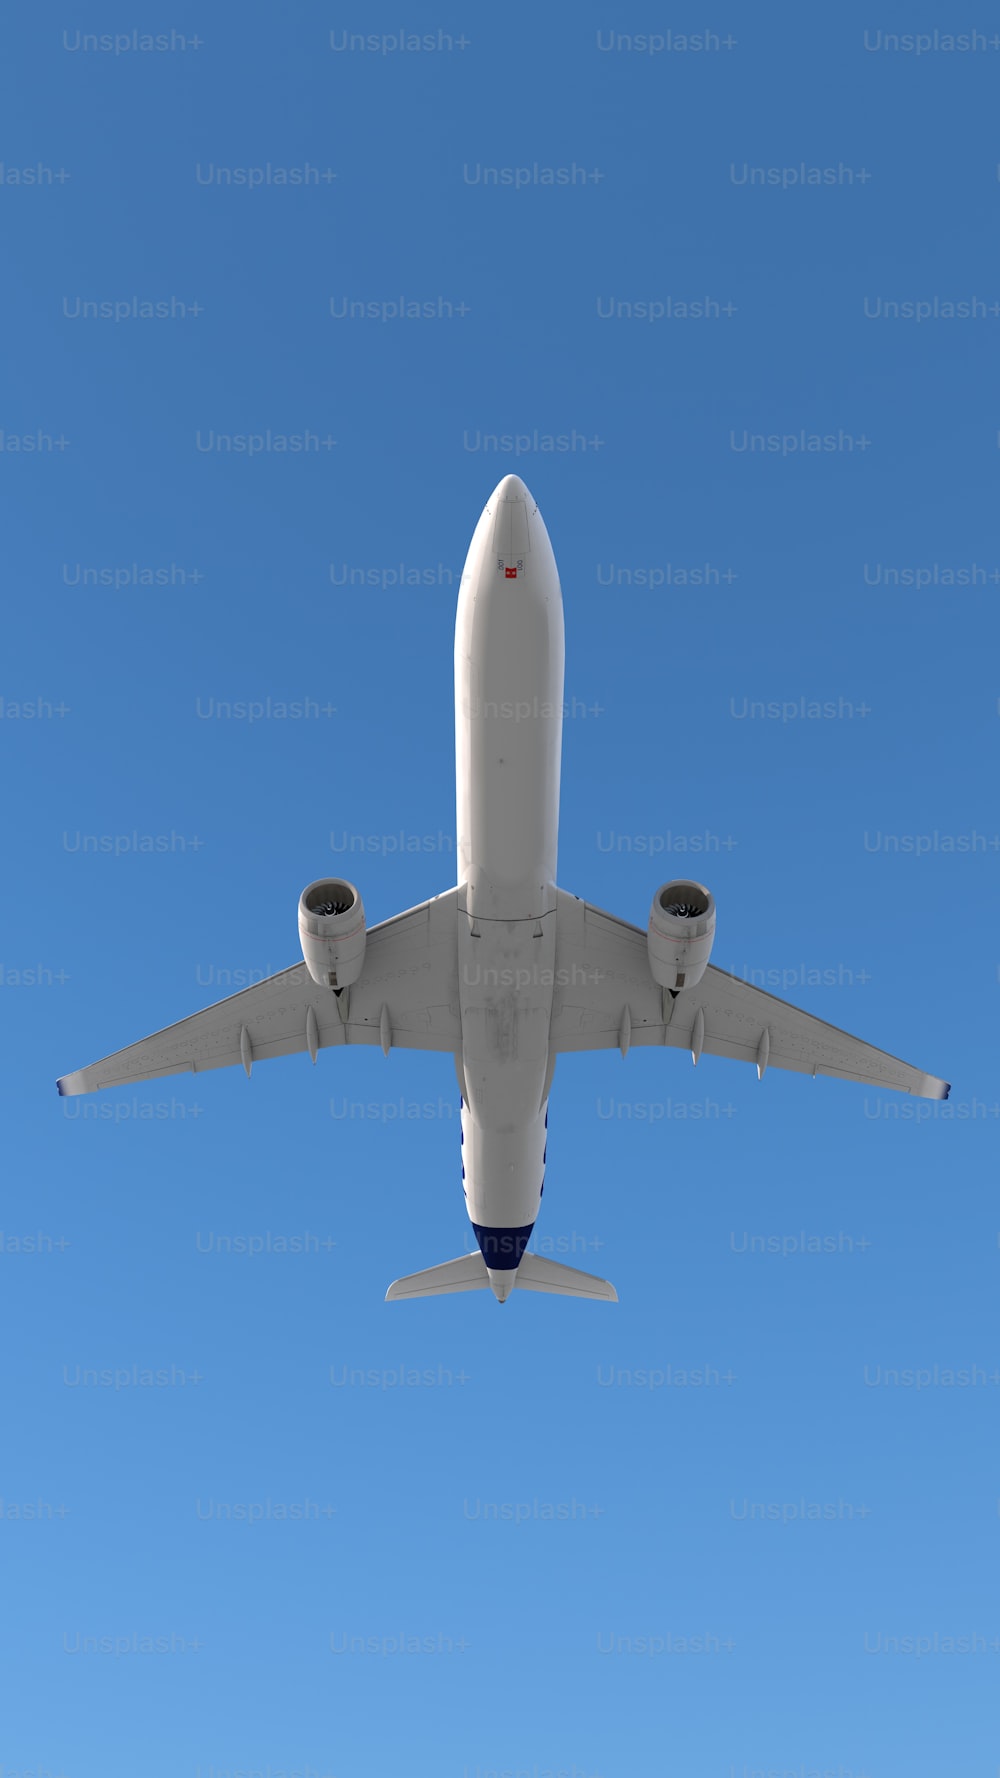 Ein großer Jetliner fliegt durch den blauen Himmel